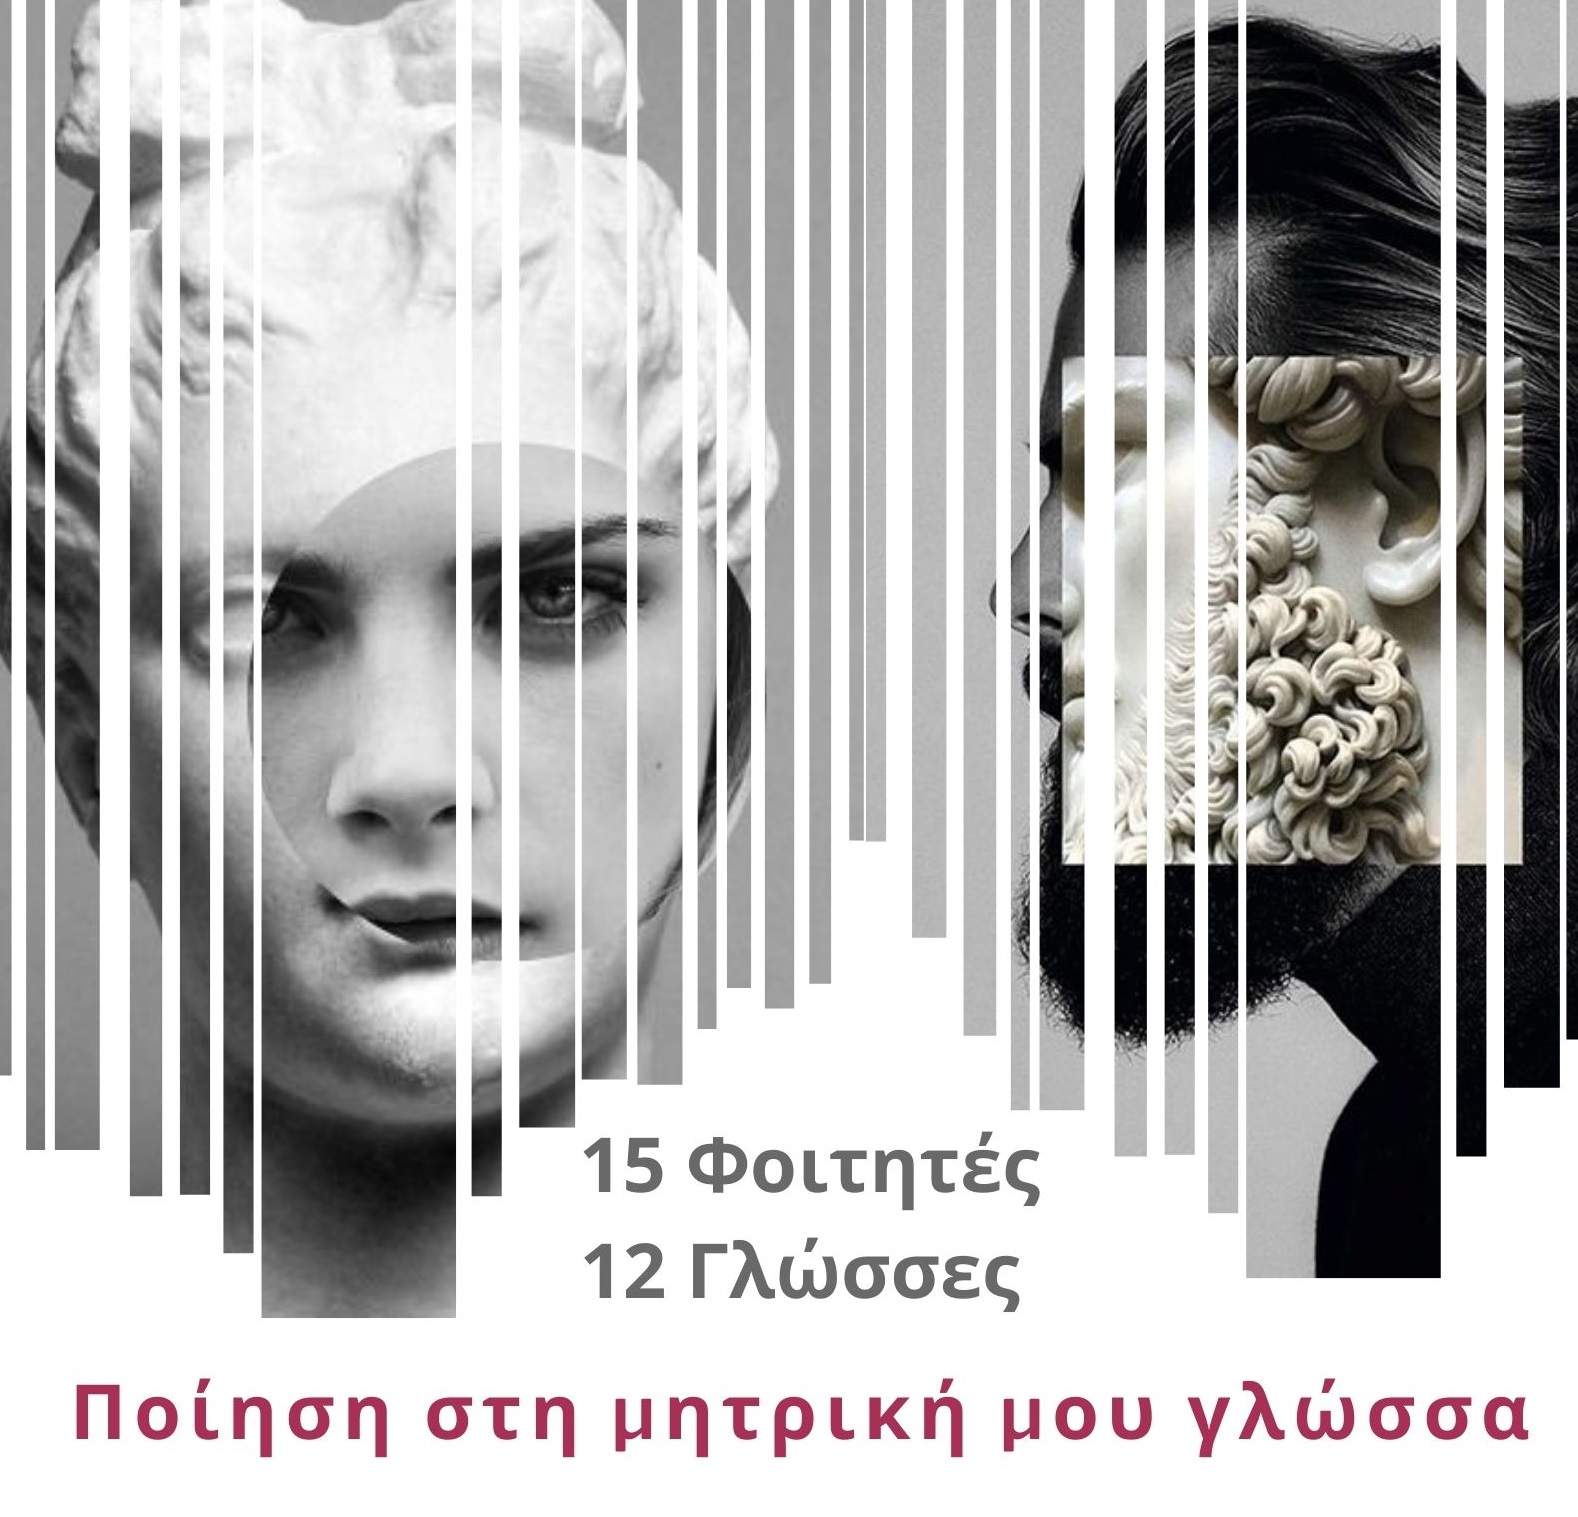 Πανεπιστήμιο Δυτικής Μακεδονίας: Διαδικτυακή Εκδήλωση με αφορμή την παγκόσμια ημέρα Ποίησης